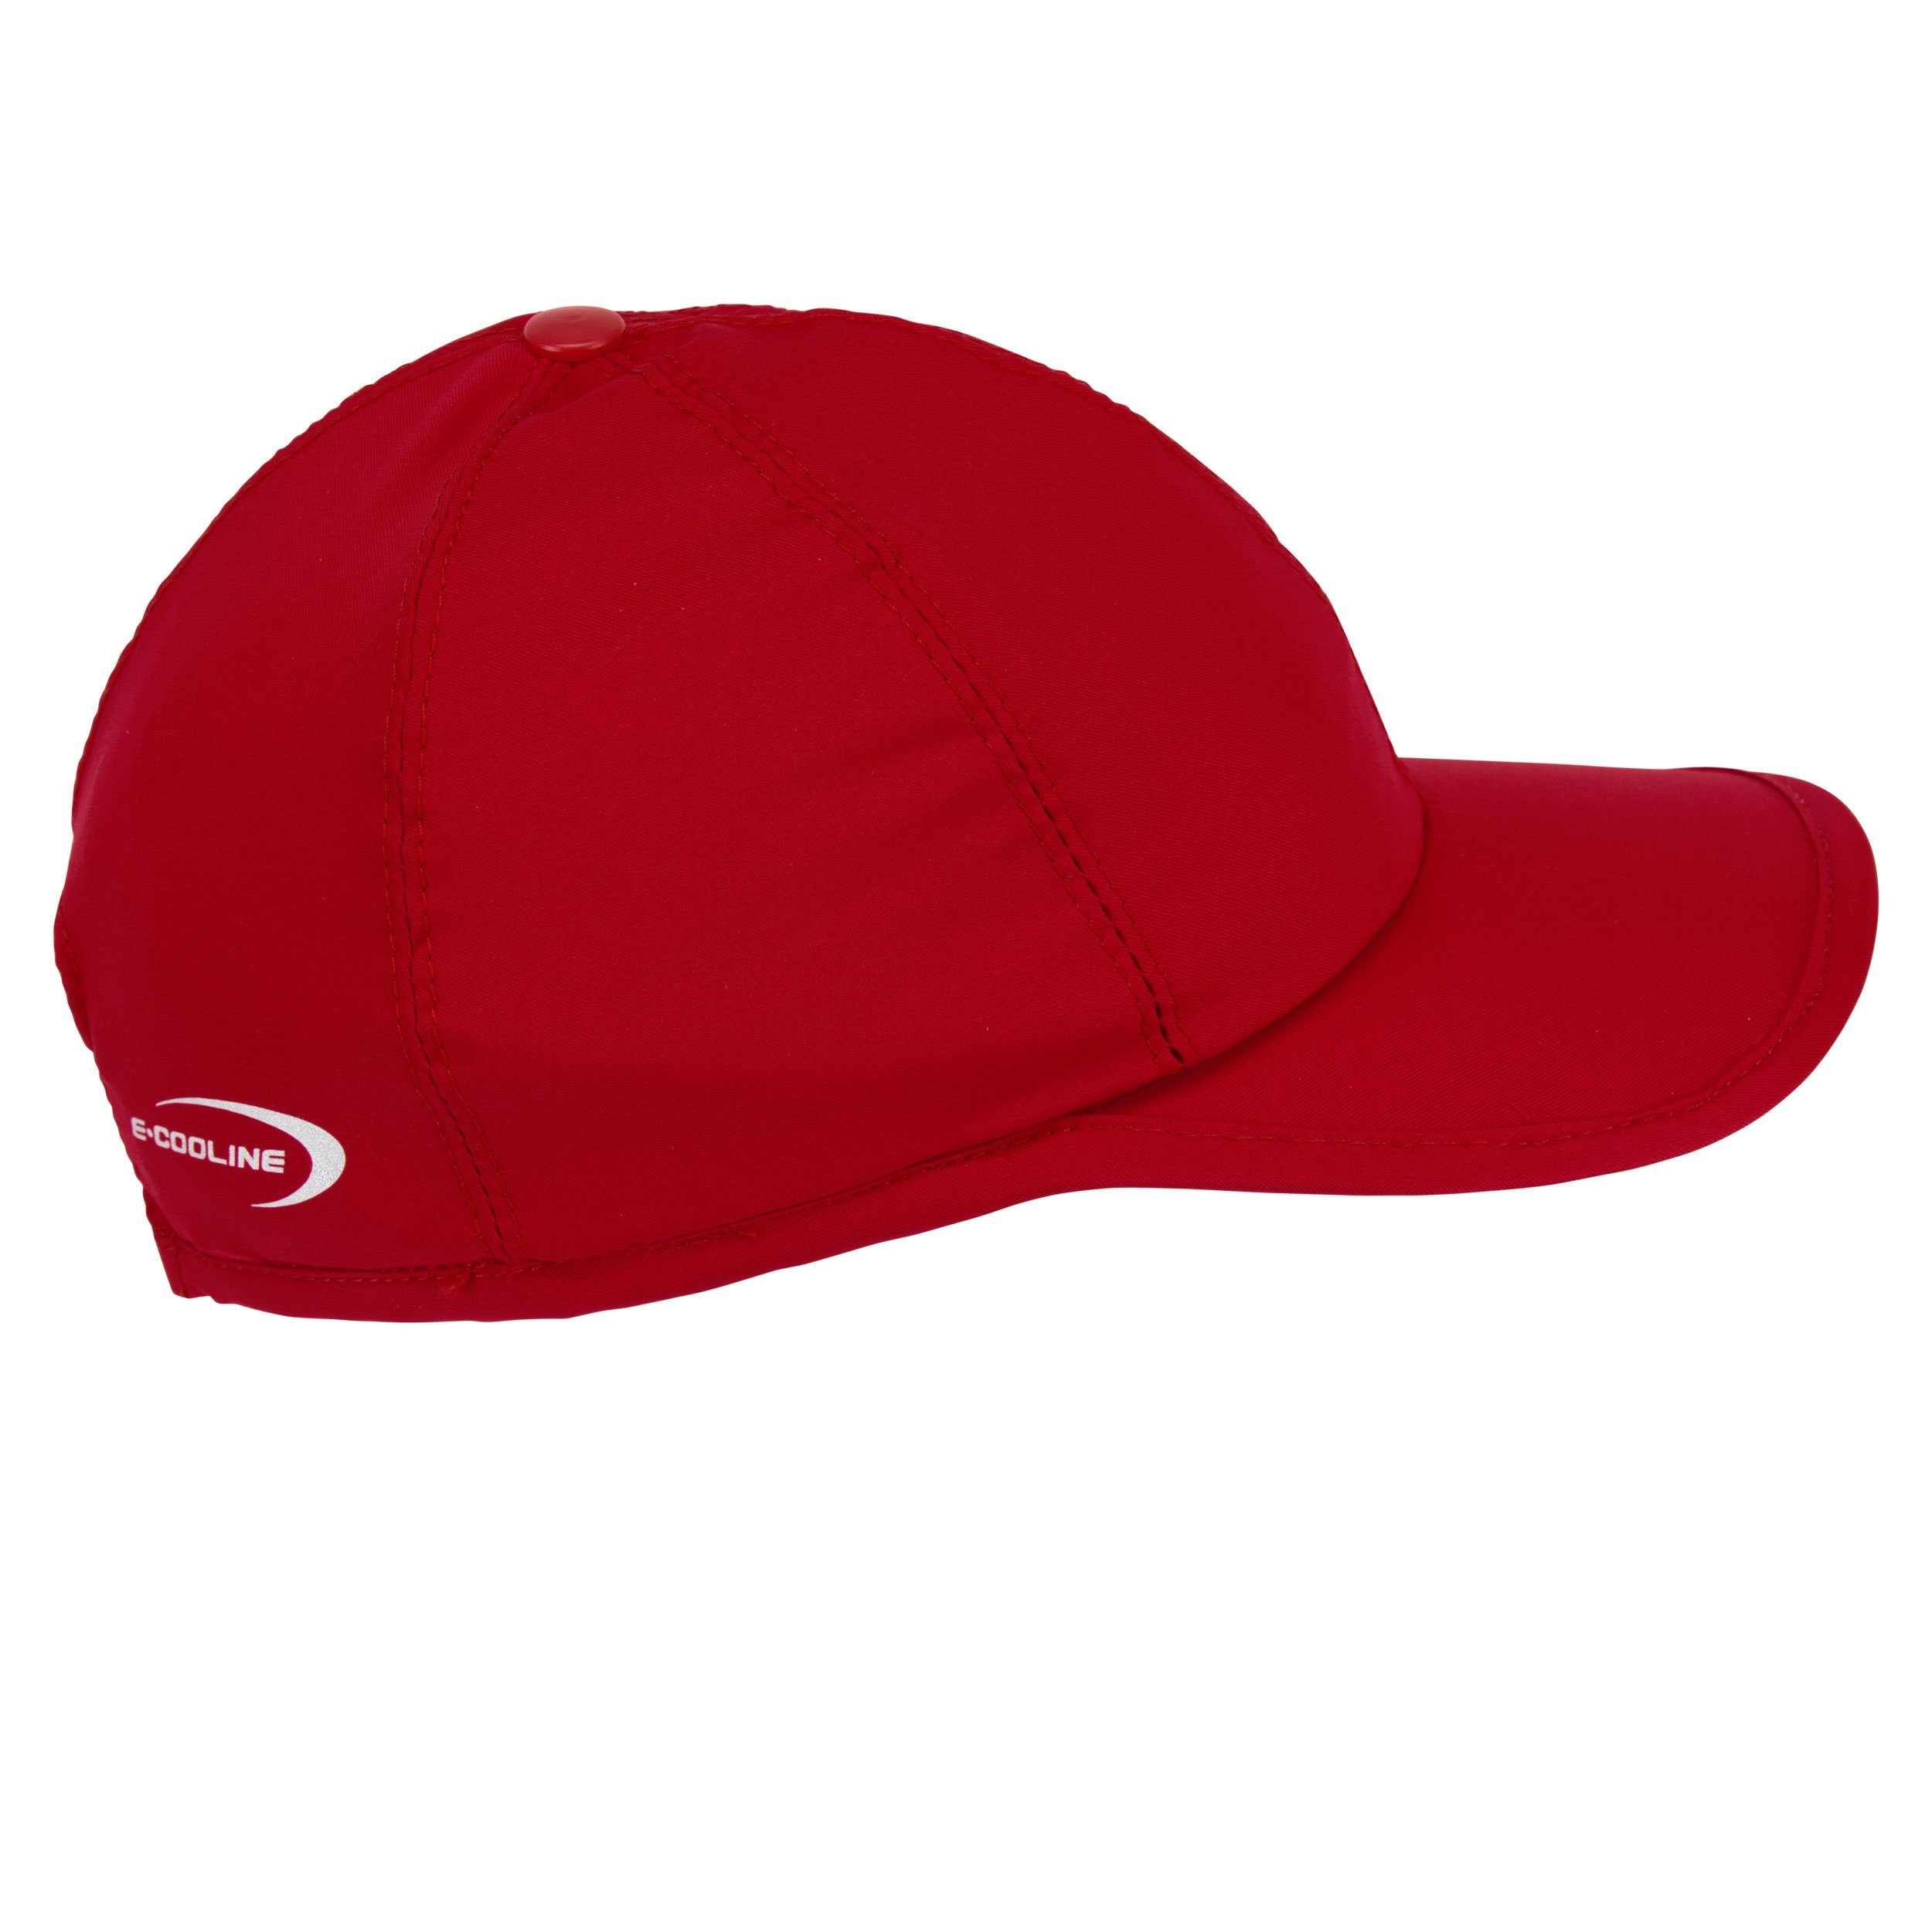 E.COOLINE Baseball Cap - Anziehen Wasser - Klimaanlage mit durch Mütze zum Aktivierung aktiv Kühlung Rot kühlende